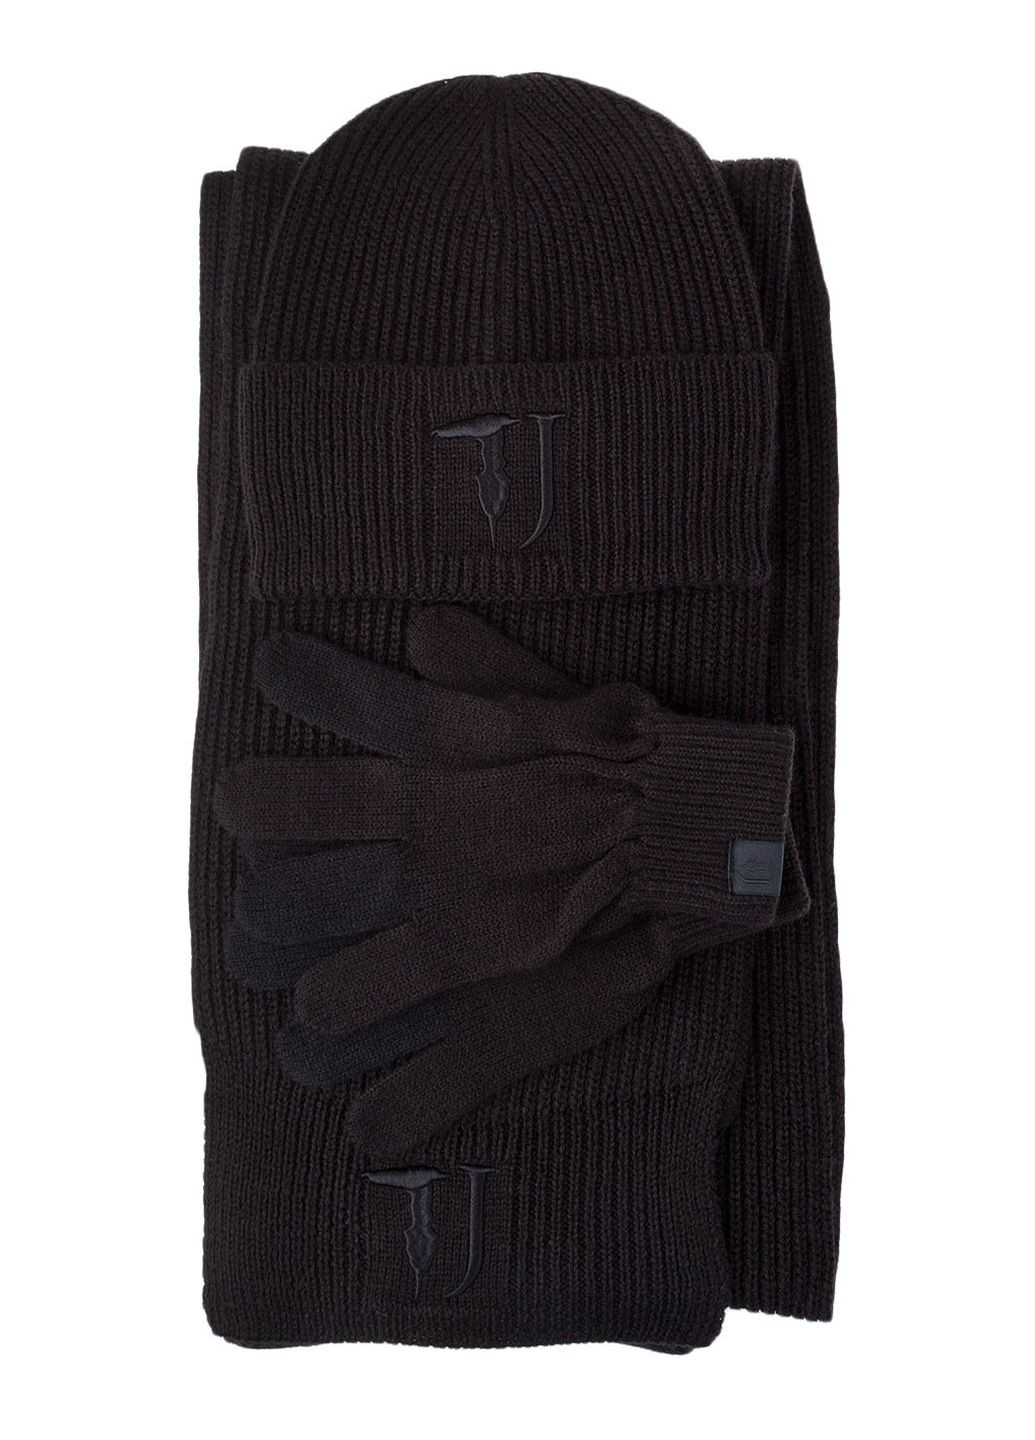 Черный зимний комплект ( шапка/шарф/рукавички ) Trussardi Jeans